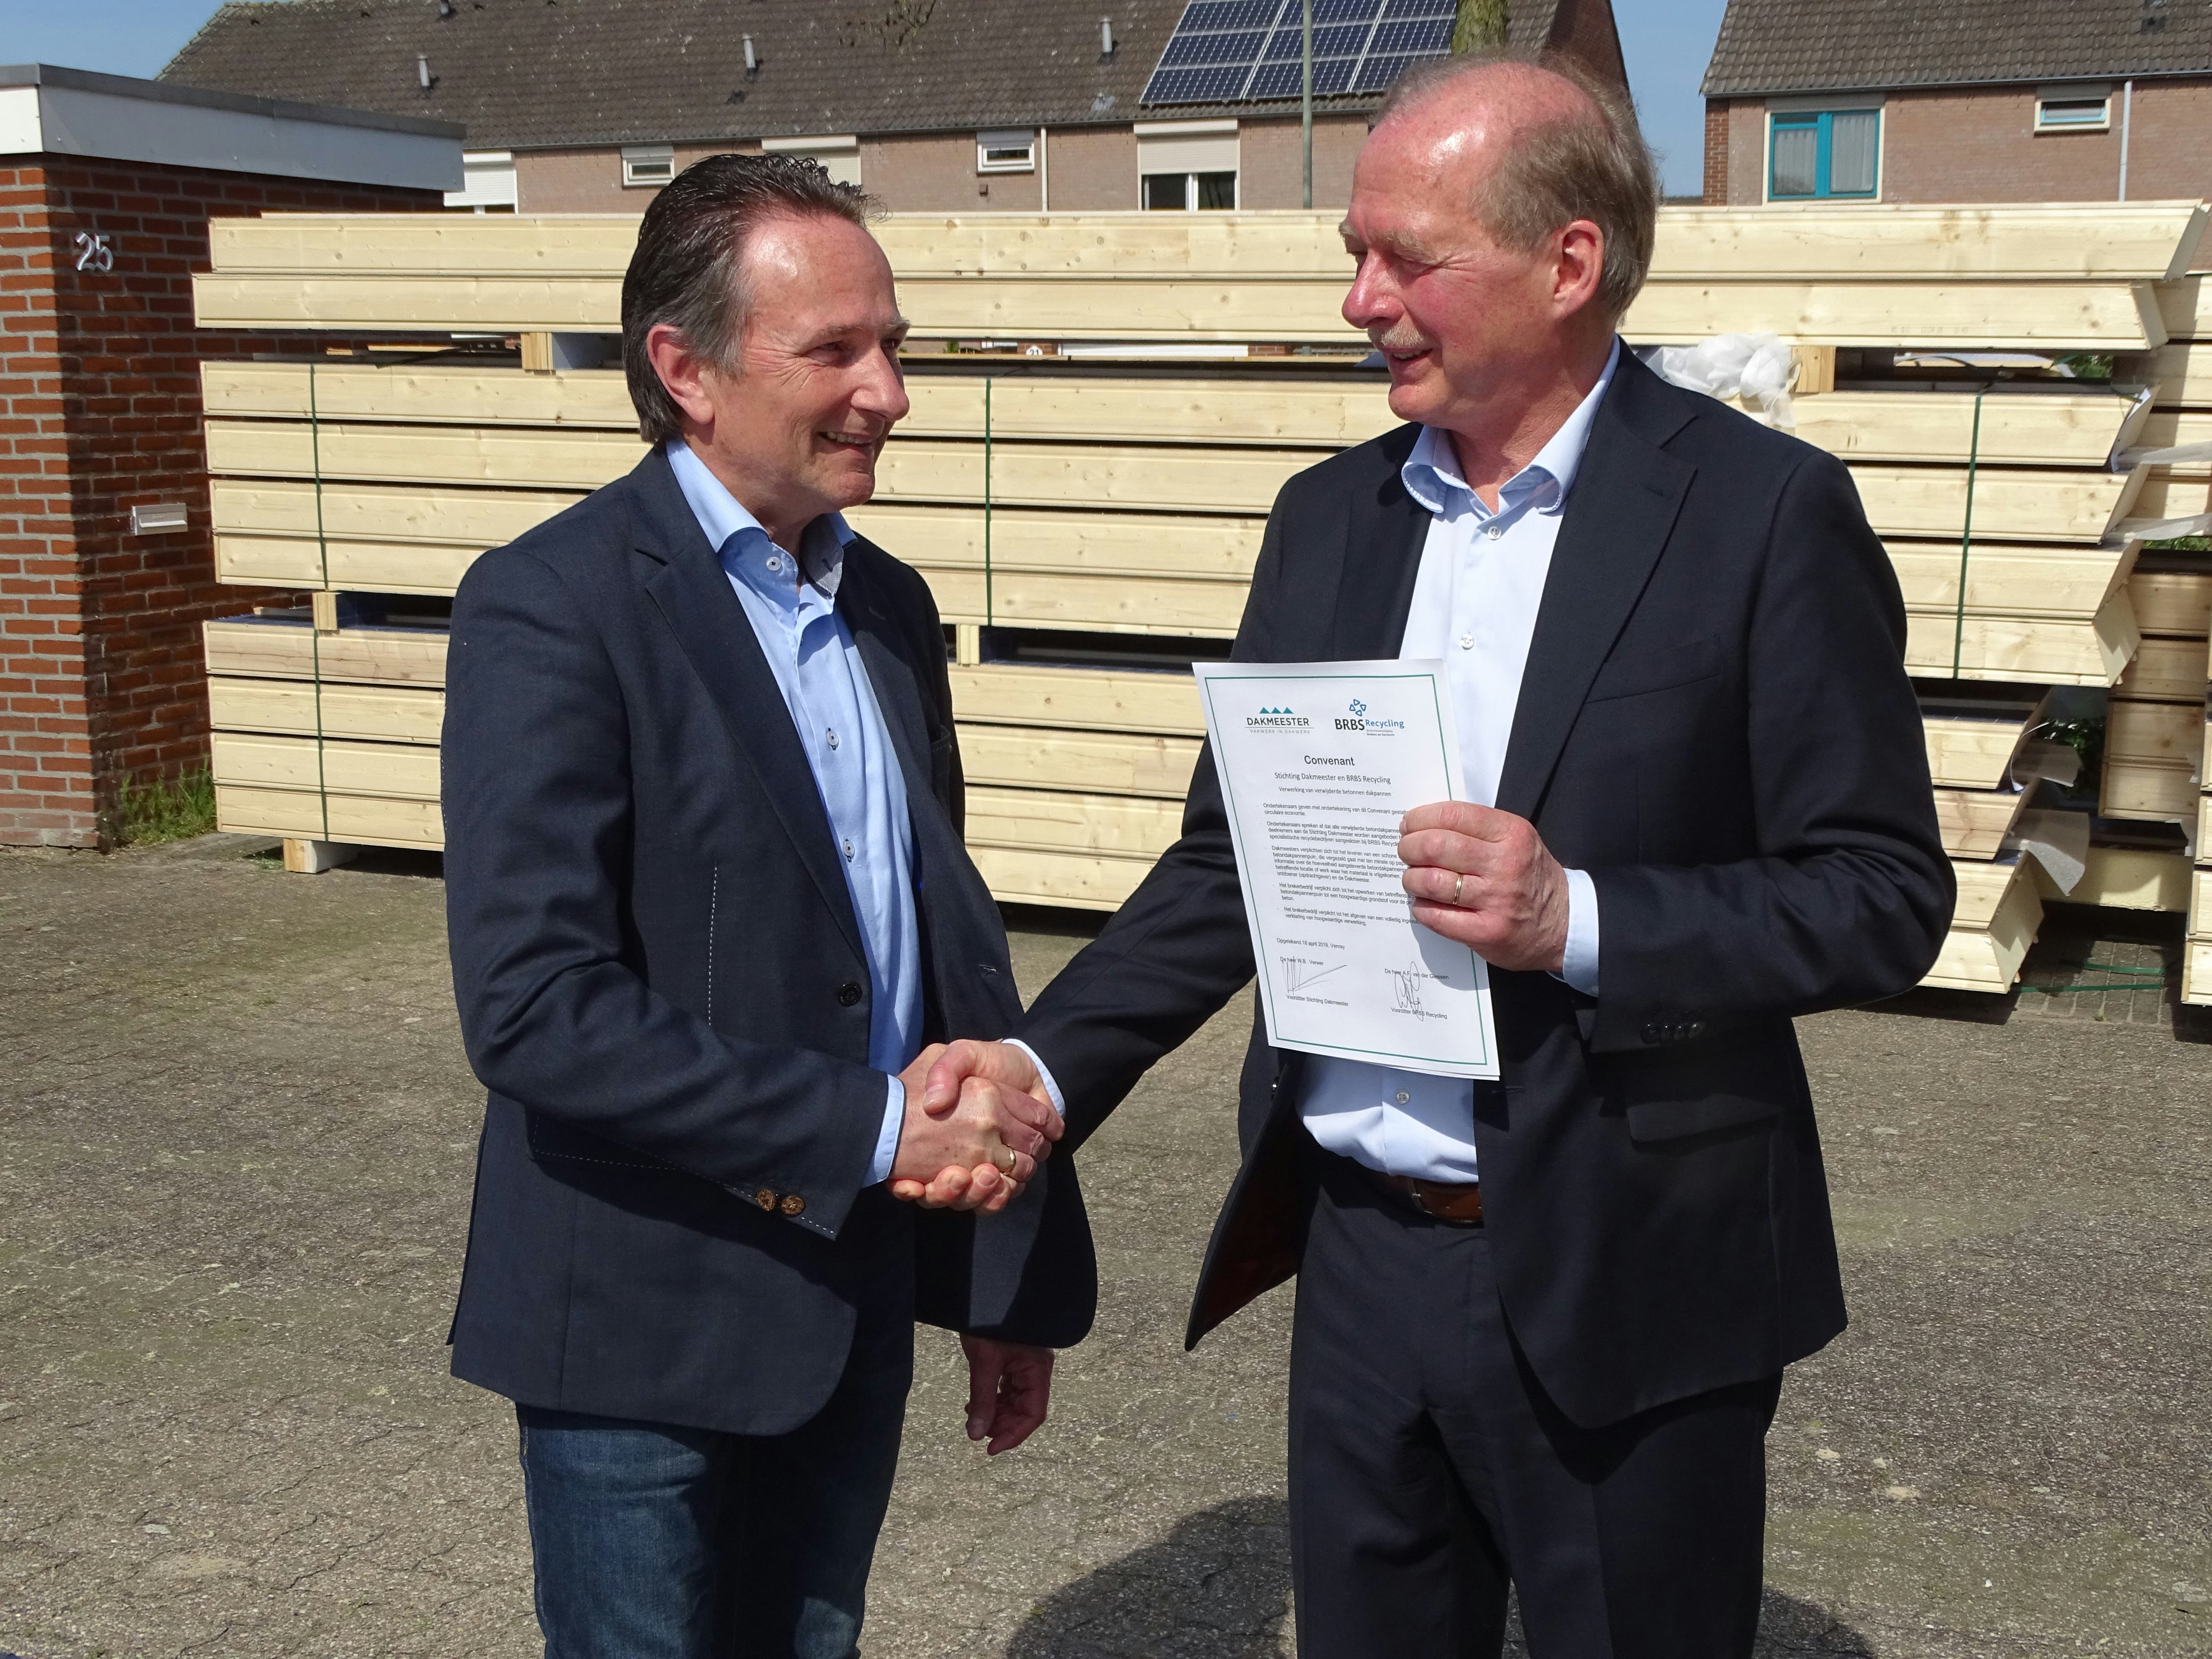 Namens de Stichting Dakmeester ondertekende voorzitter Will Verwer het Convenant Recycling Betondakpannen en voorzitter Ton van der Giessen deed dat voor BRBS Recycling.